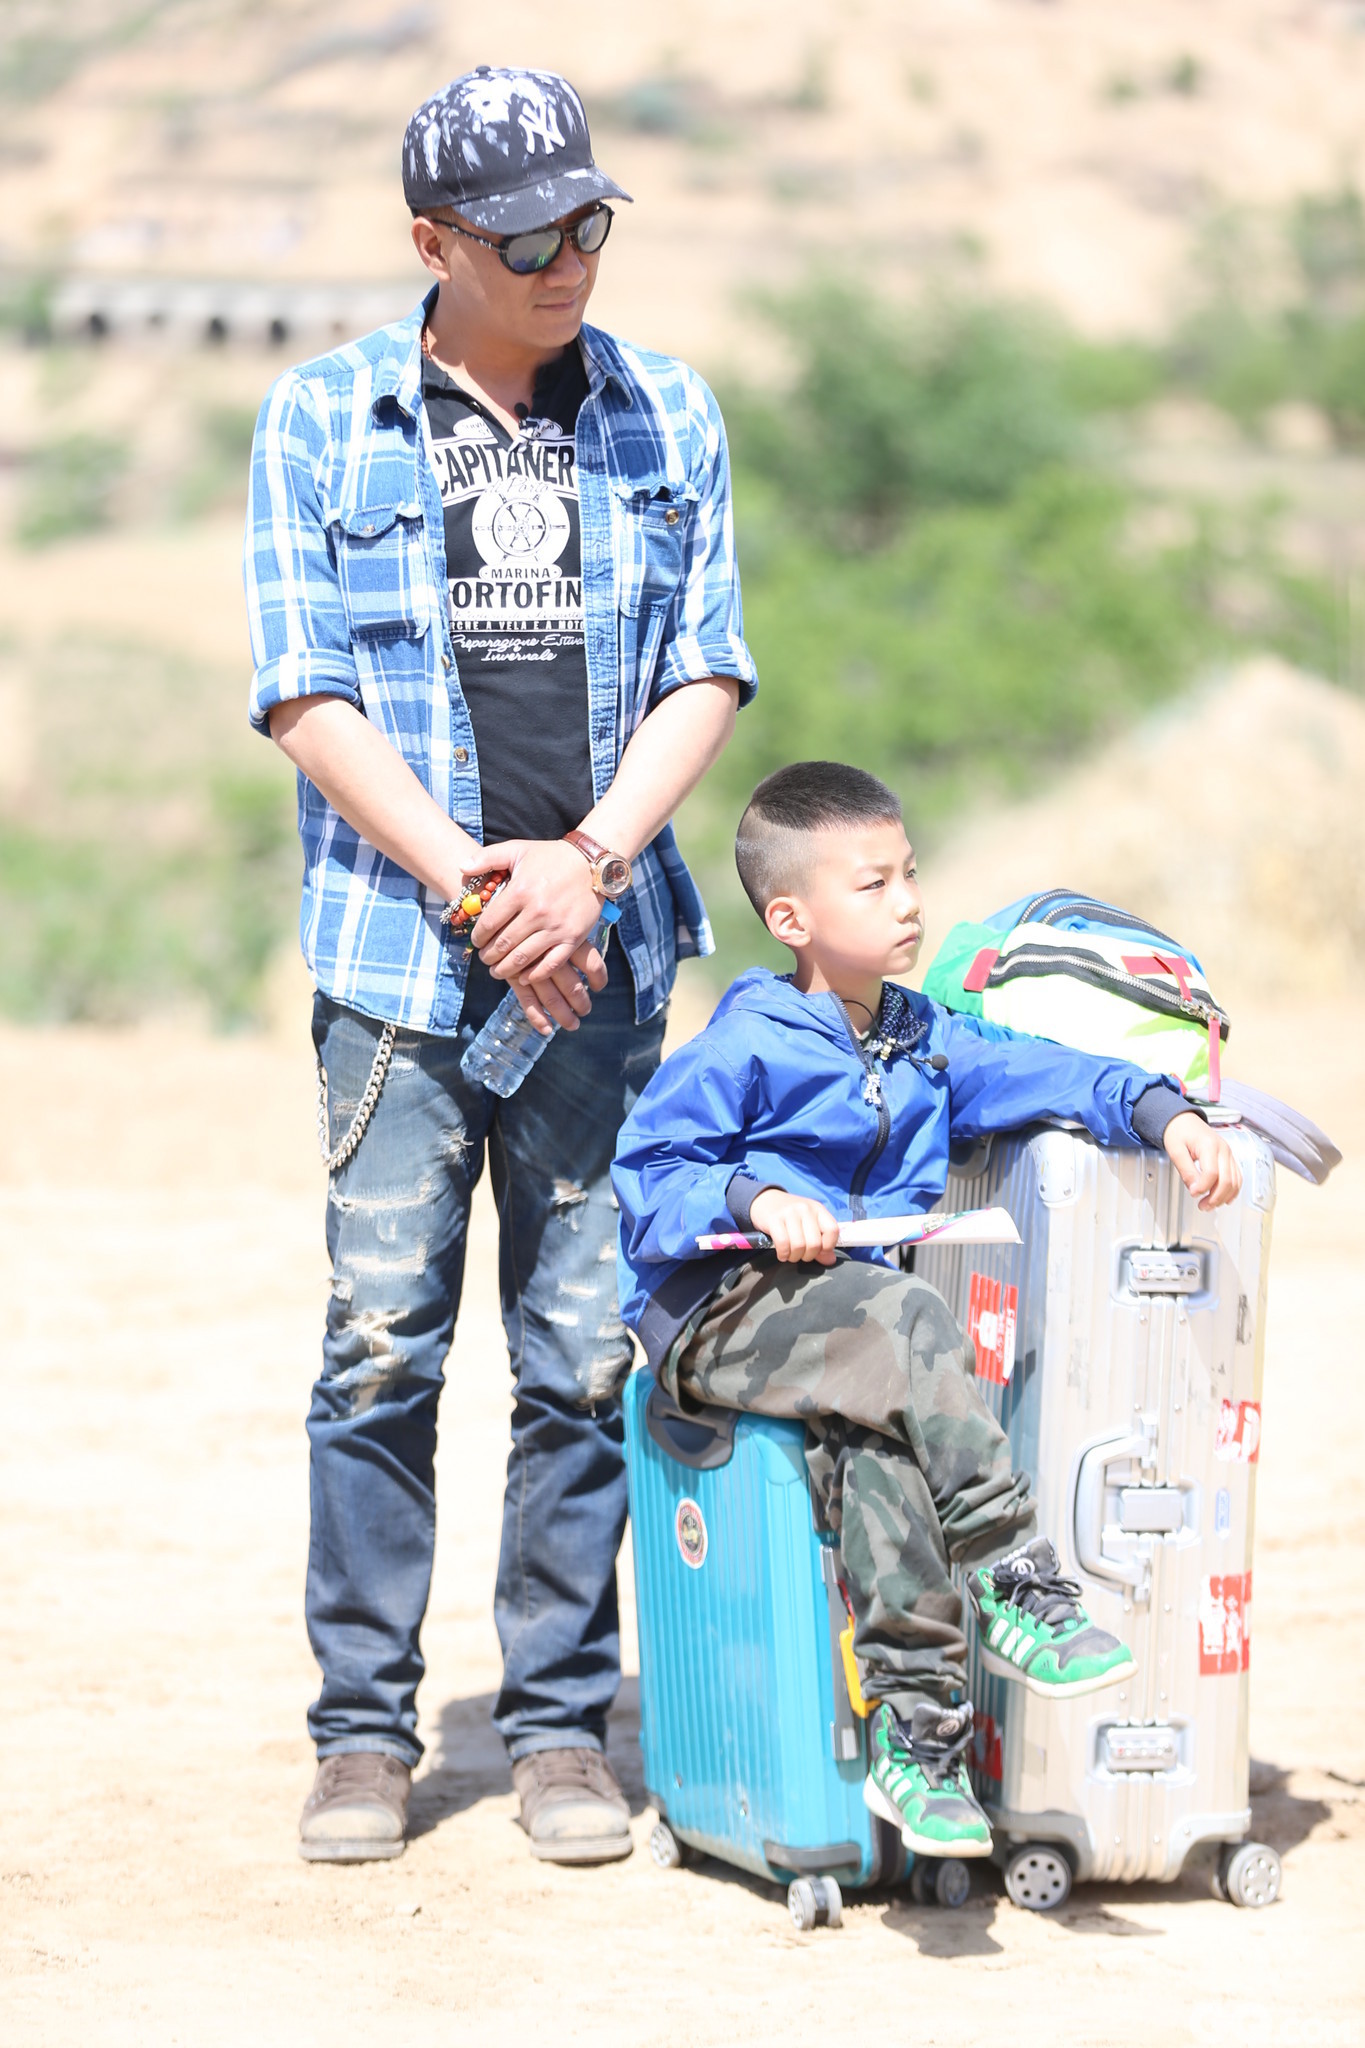 然而，2015年，胡军和儿子胡皓康参加真人秀节目《爸爸去哪儿3》后，硬汉的形象有了180度的大转变，成为了一个可爱的超级奶爸，默默站在儿子旁边的小跟班儿。